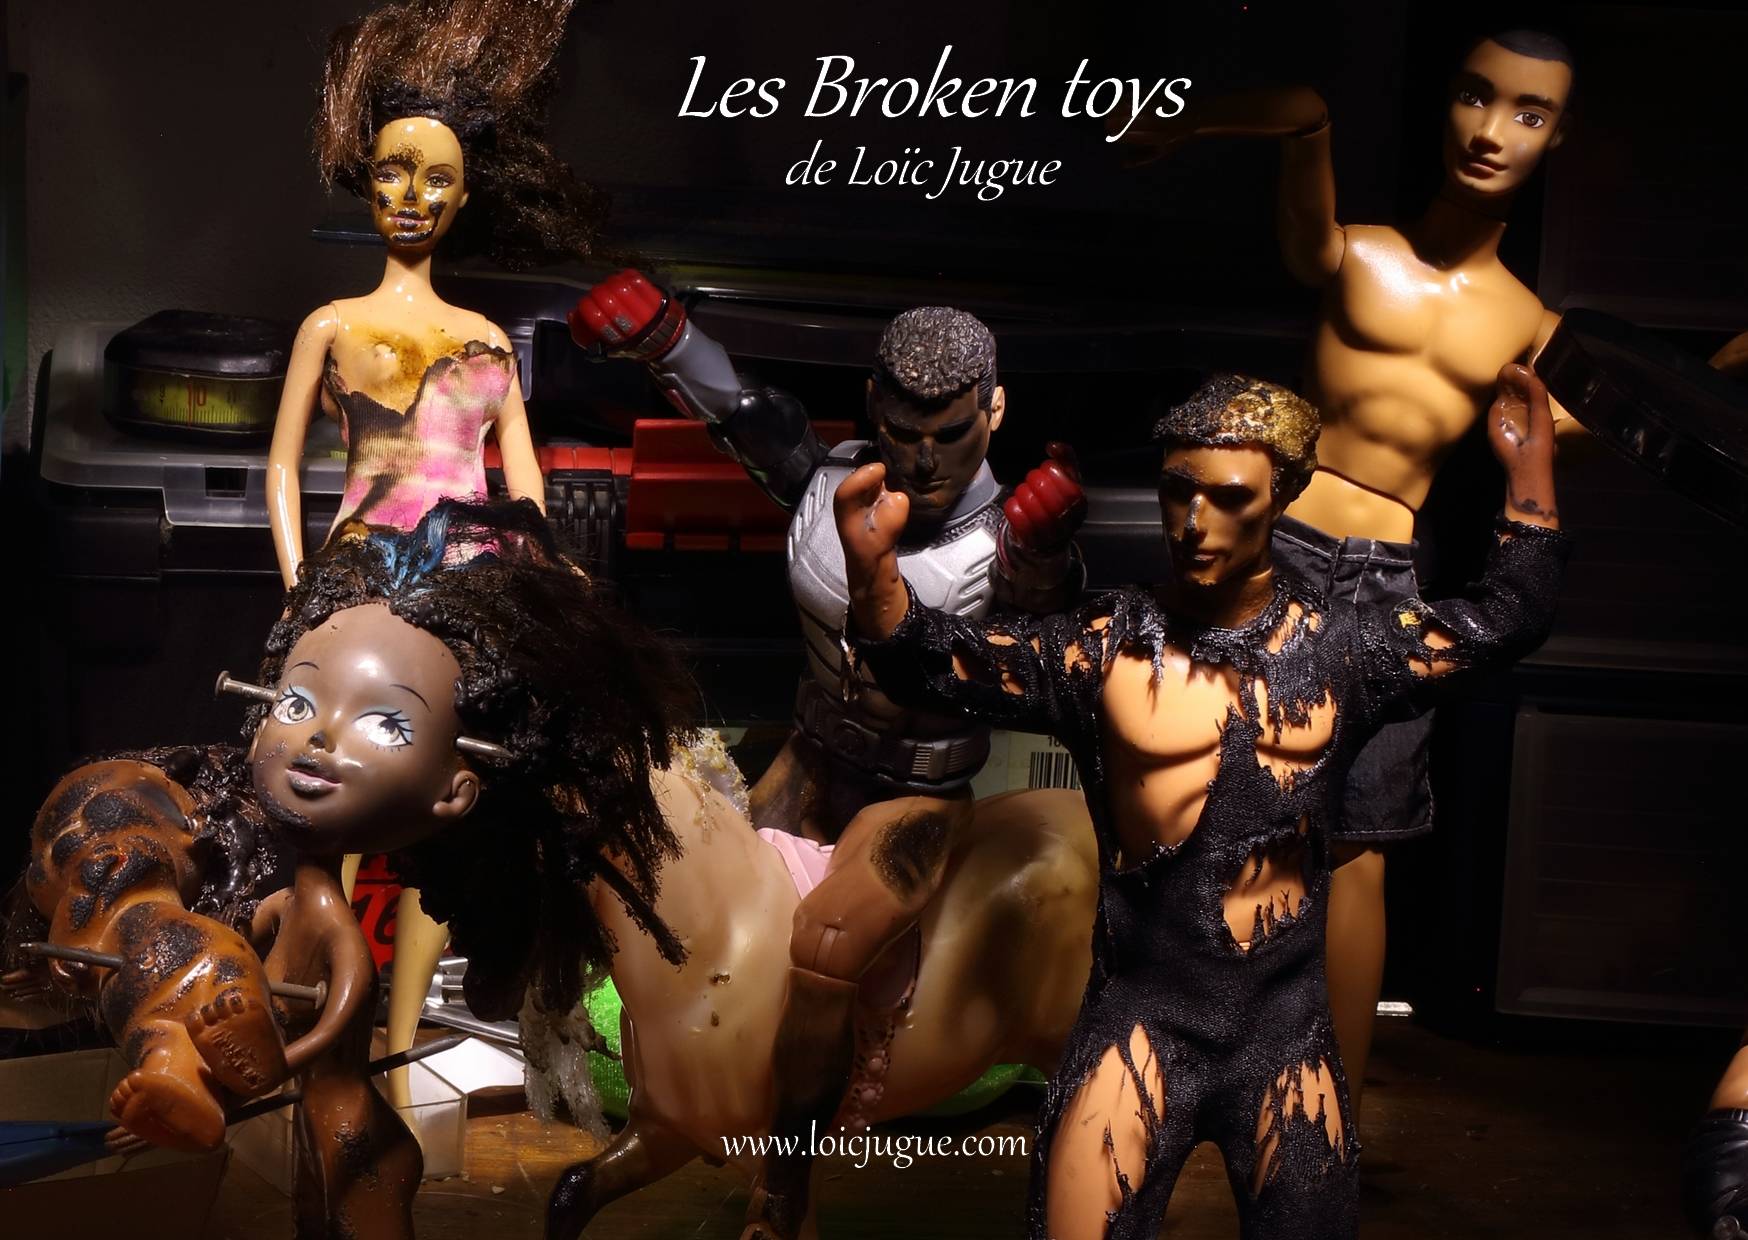 Les broken toys de Loïc Jugue: L'atelier de l'artiste (détail 1)